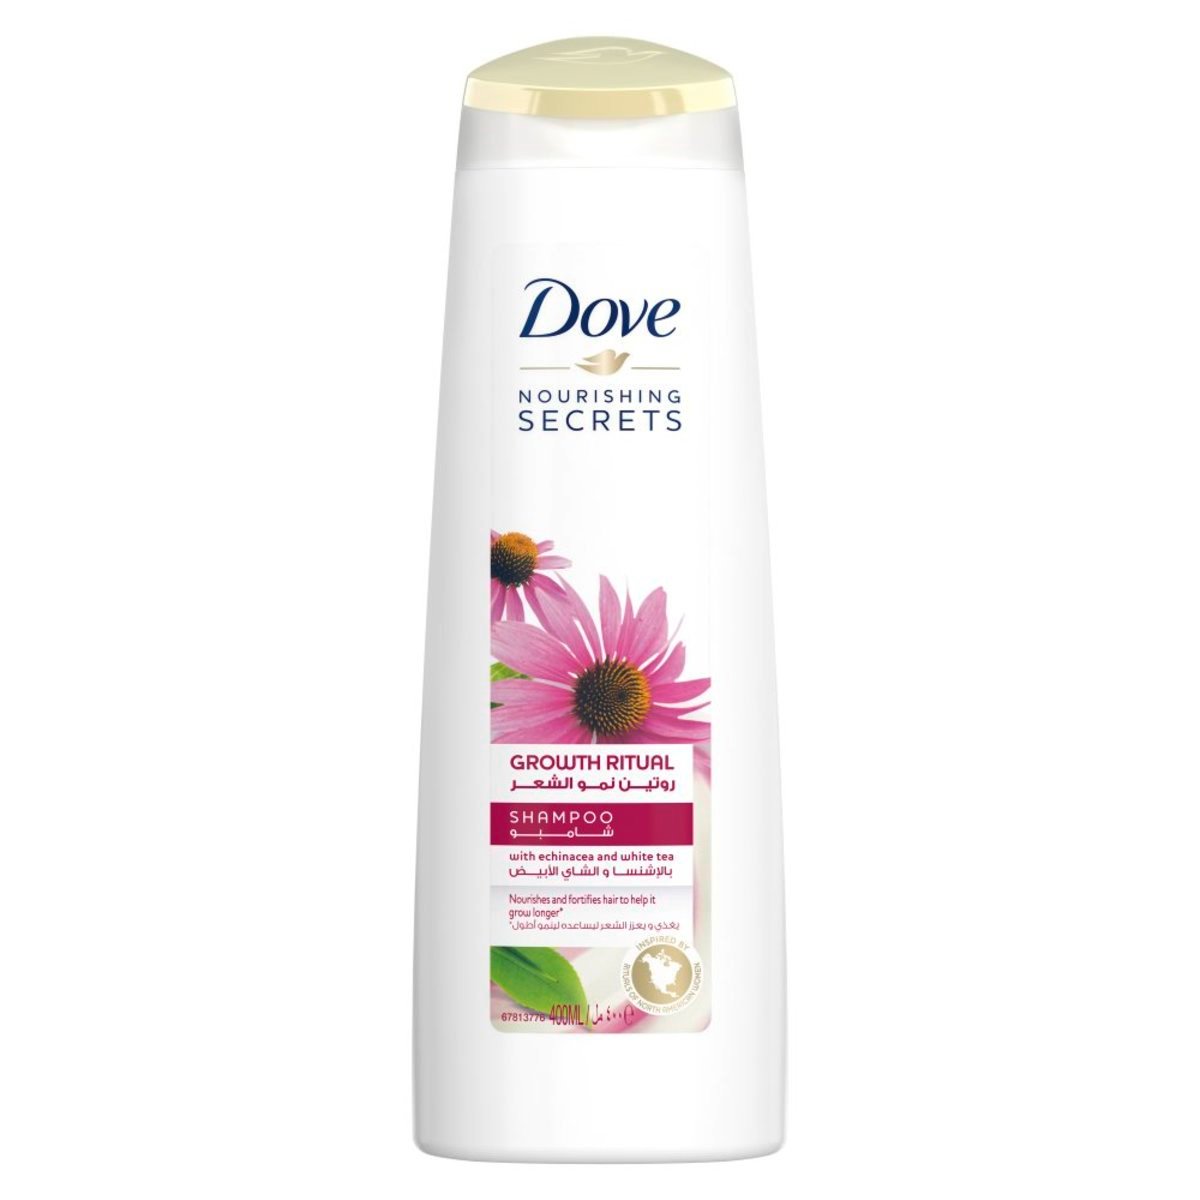 Dove Nourishing Secrets Shampoo Growth Ritual- Echinacea and White Tea 400ml